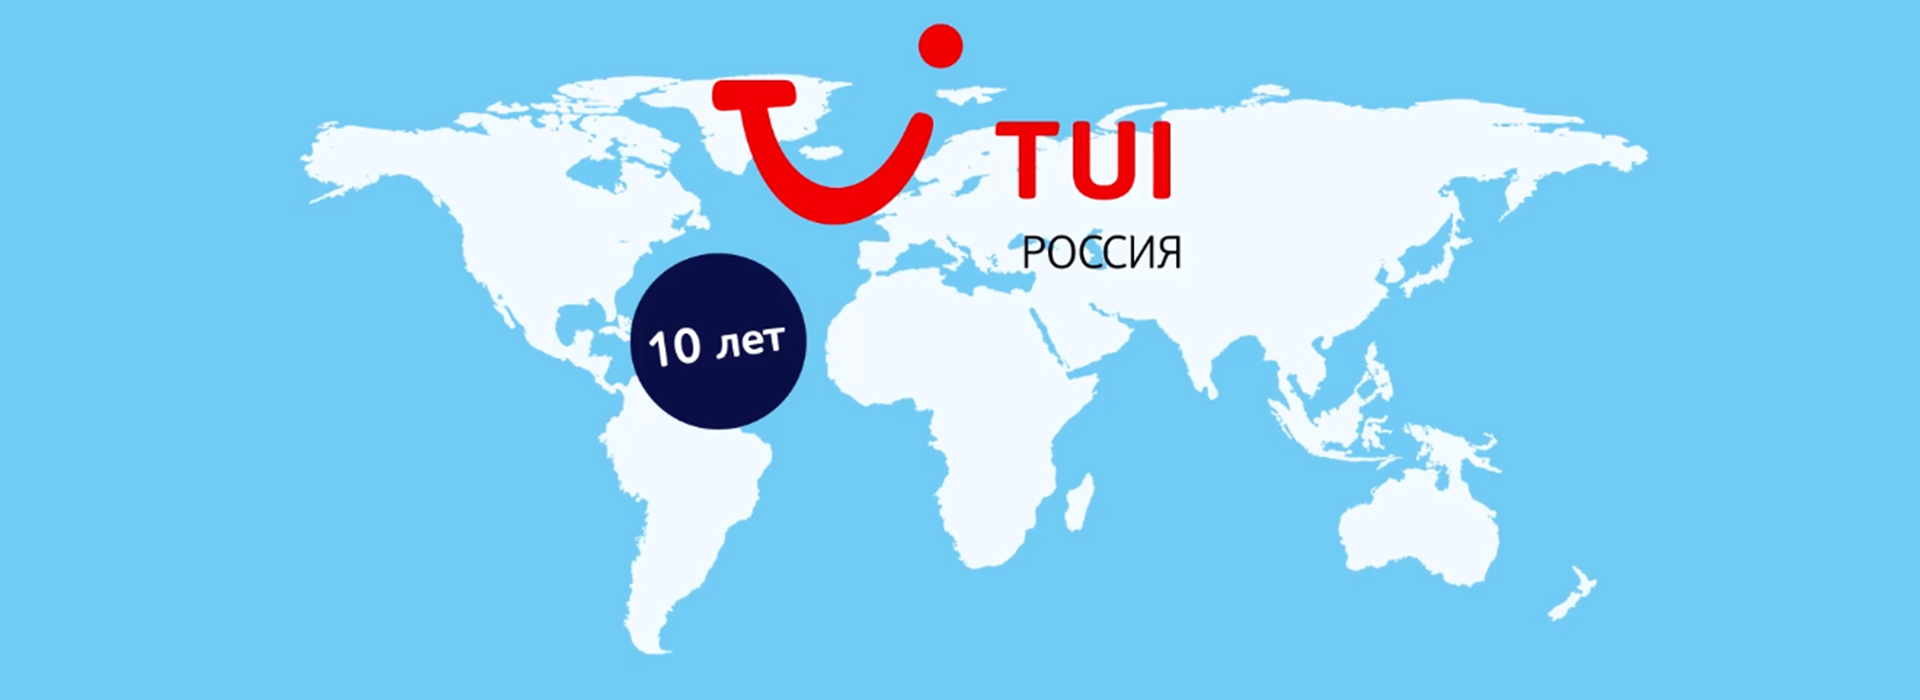 TUI Россия – новый партнёр хоккейного клуба «Спартак»